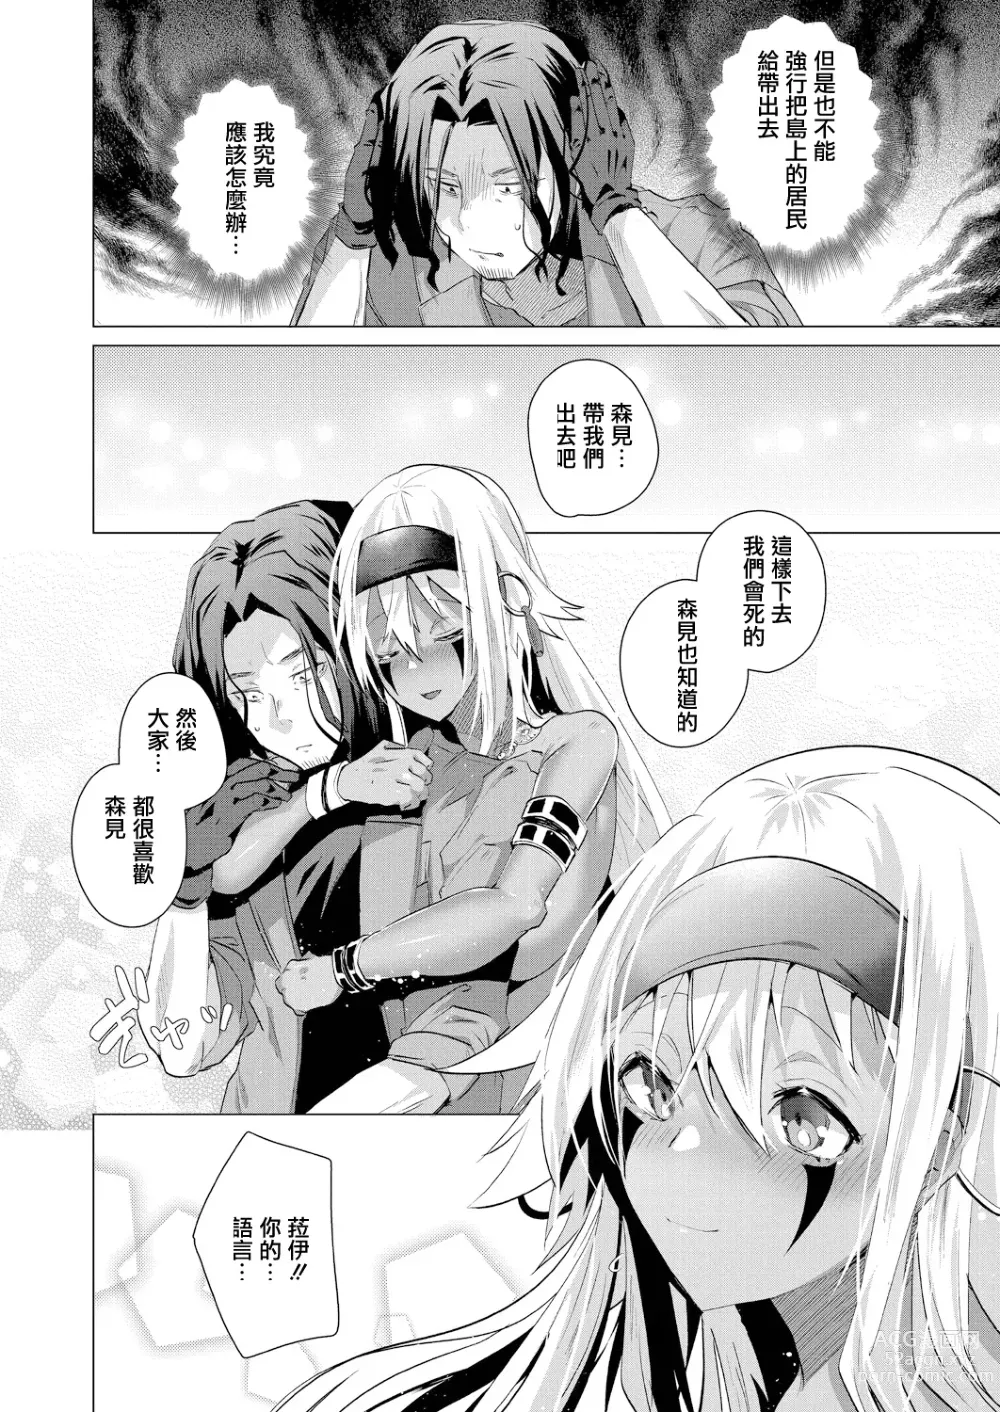 Page 2 of manga Kassyoku Musume no Harem Shima - Harem Island of Brown Girl Ch. 5-6